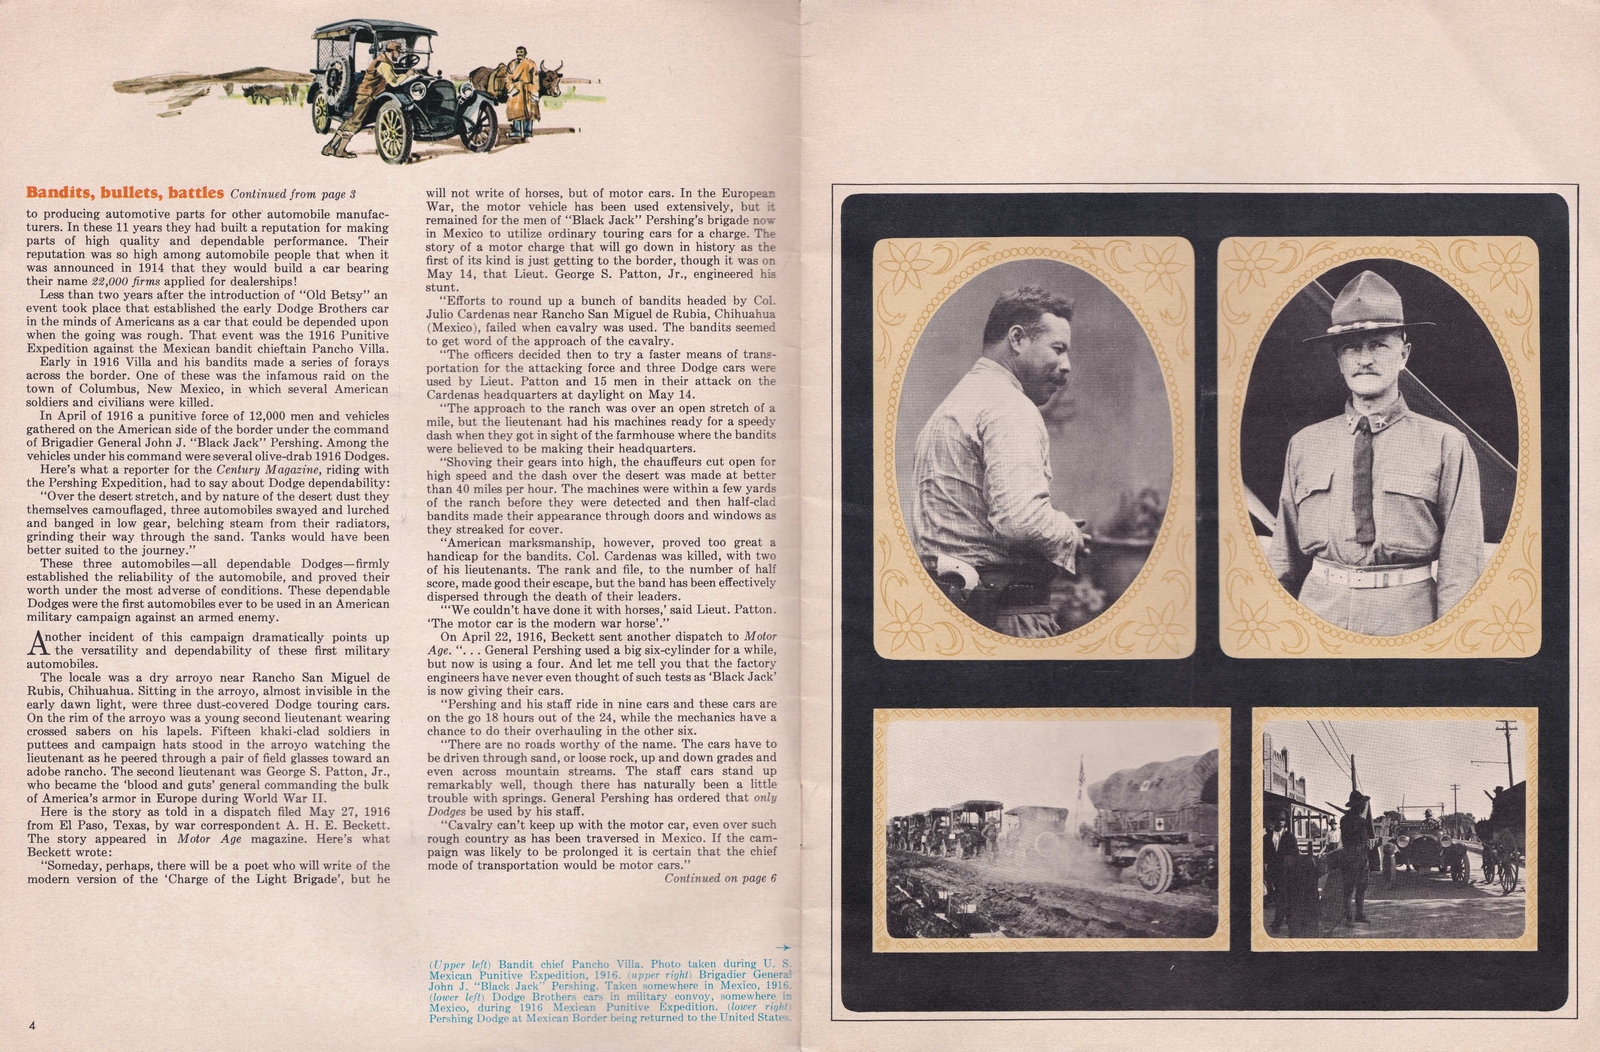 n_1964 Dodge Golden Jubilee Magazine-04-05.jpg